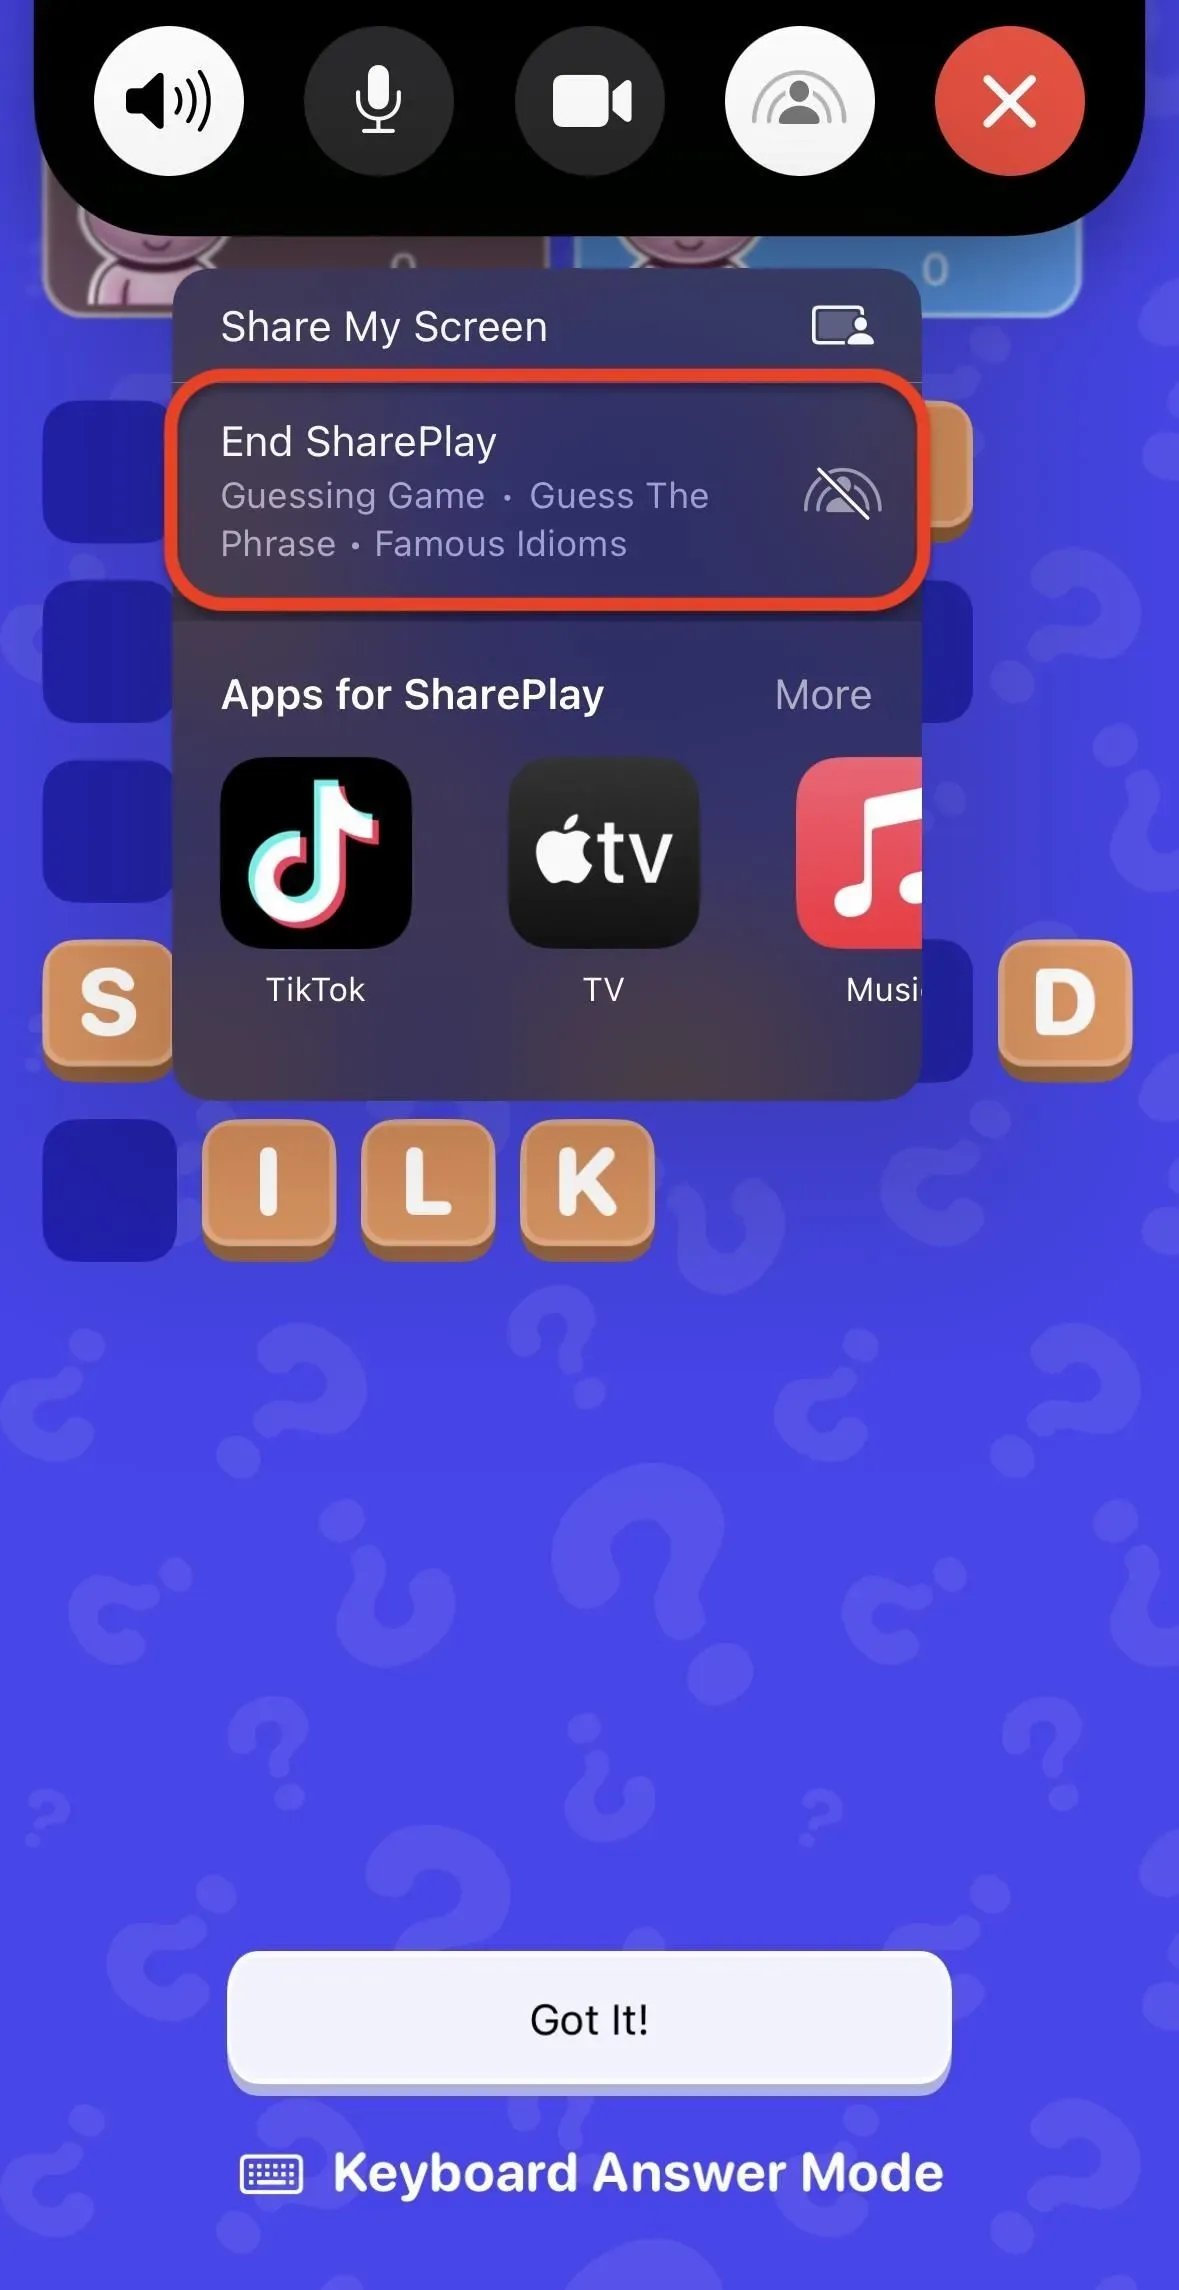 Met de nieuwste truc van FaceTime kun je tijdens gesprekken games spelen met familie en vrienden op je iPhone - zo werkt het